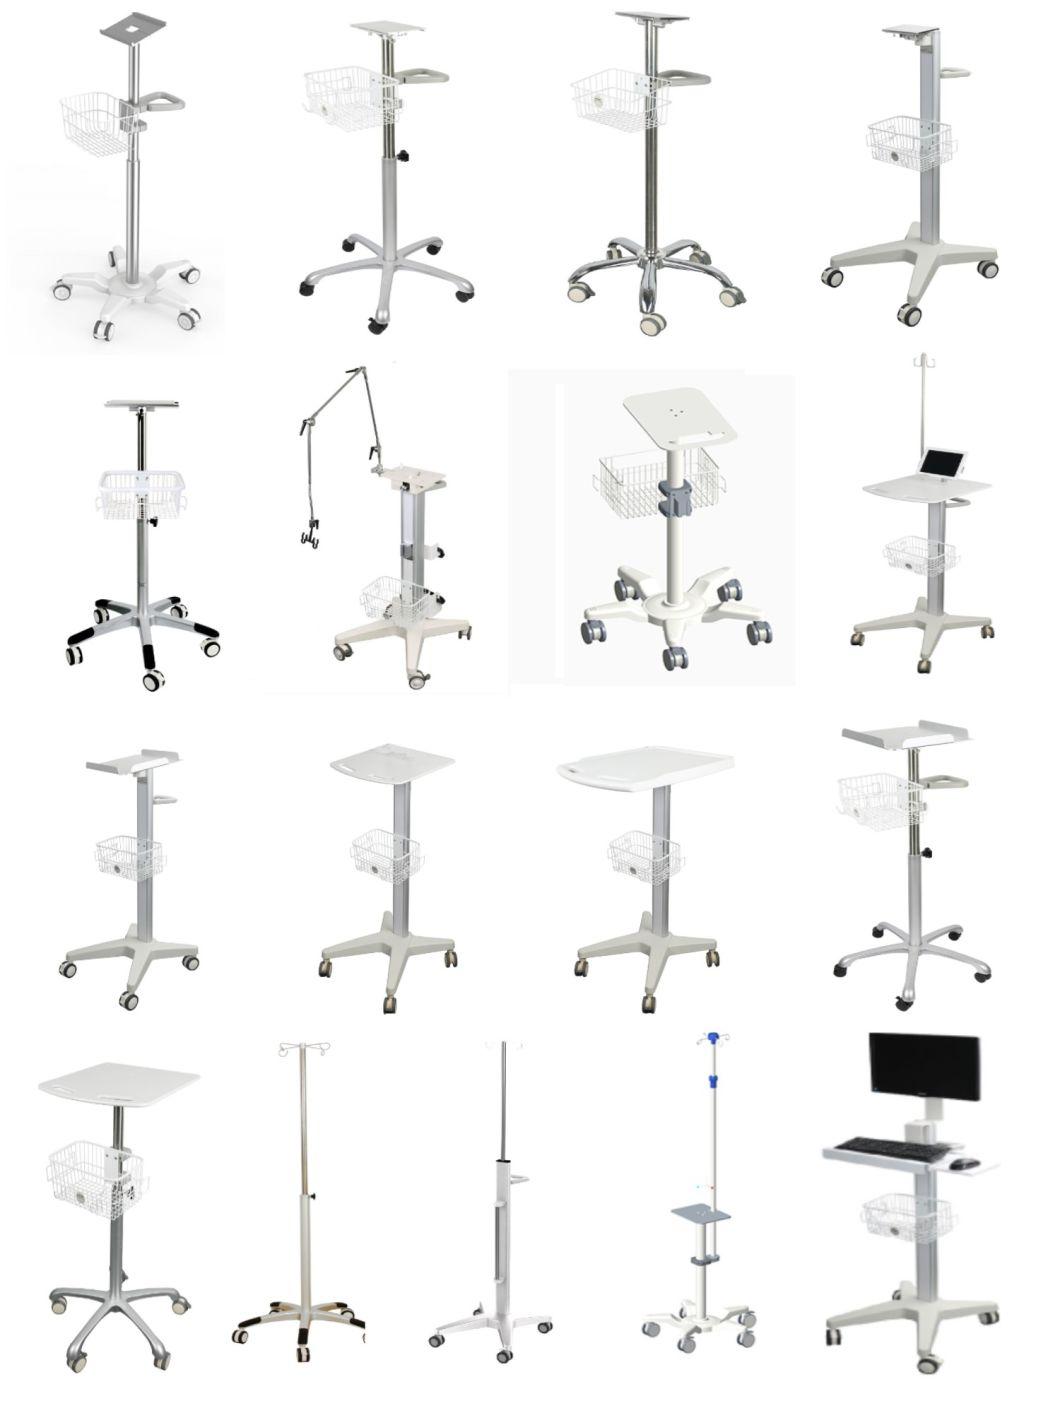 Manufacturer Mobile Medical Furniture for Computer Instrument Hospital Trolley Cart